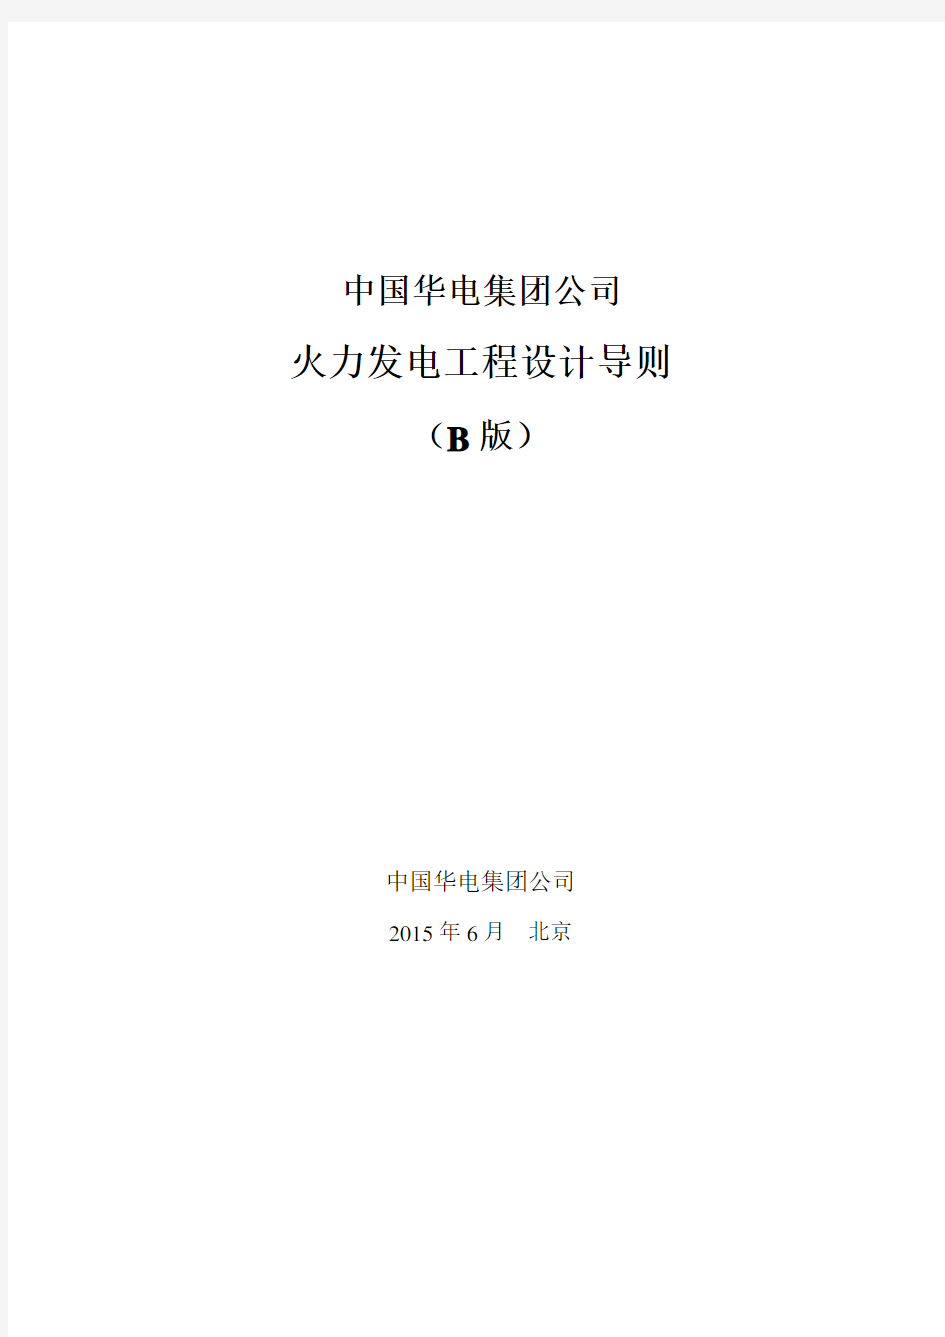 中国华电集团公司火力发电工程设计导则(B版)